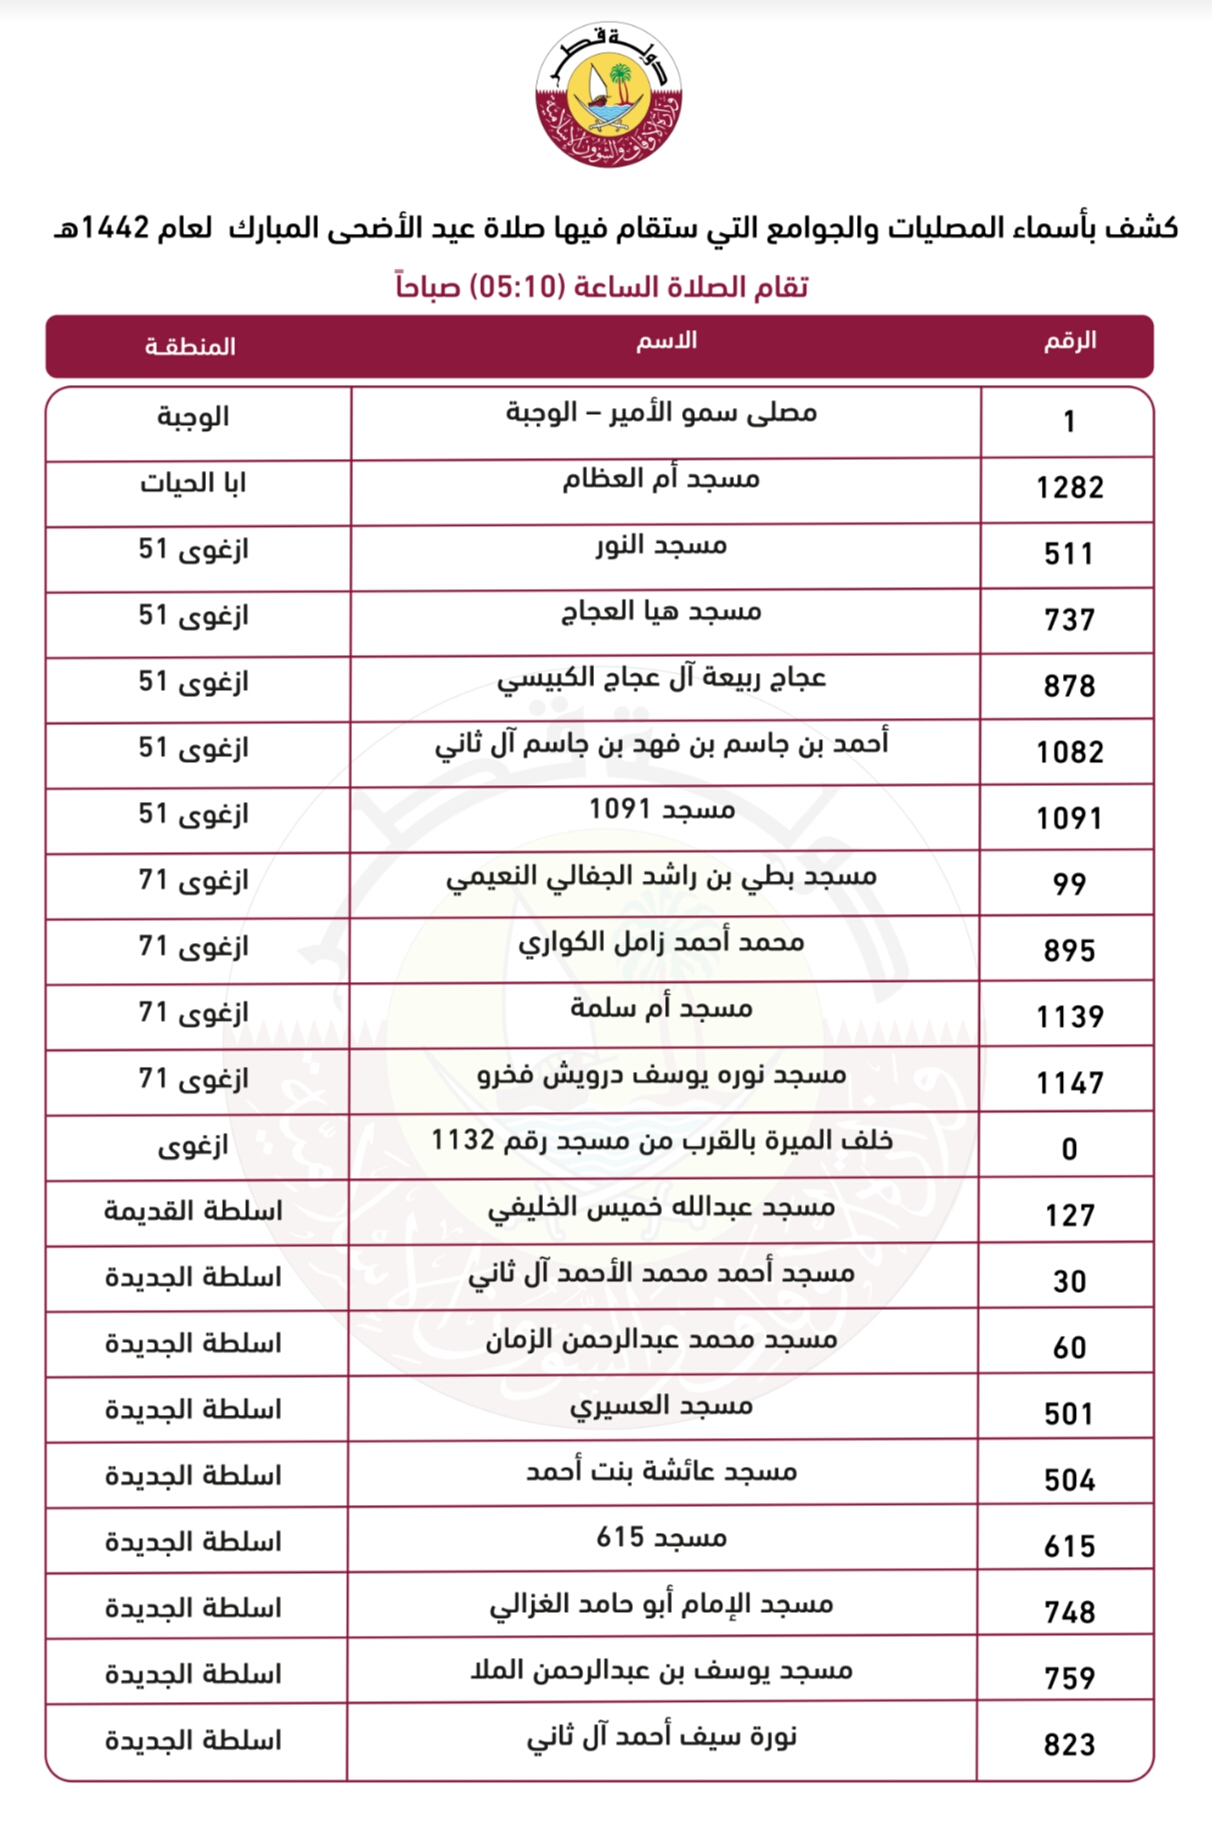 ٢٠٢١ قطر عدد سكان عدد سكان